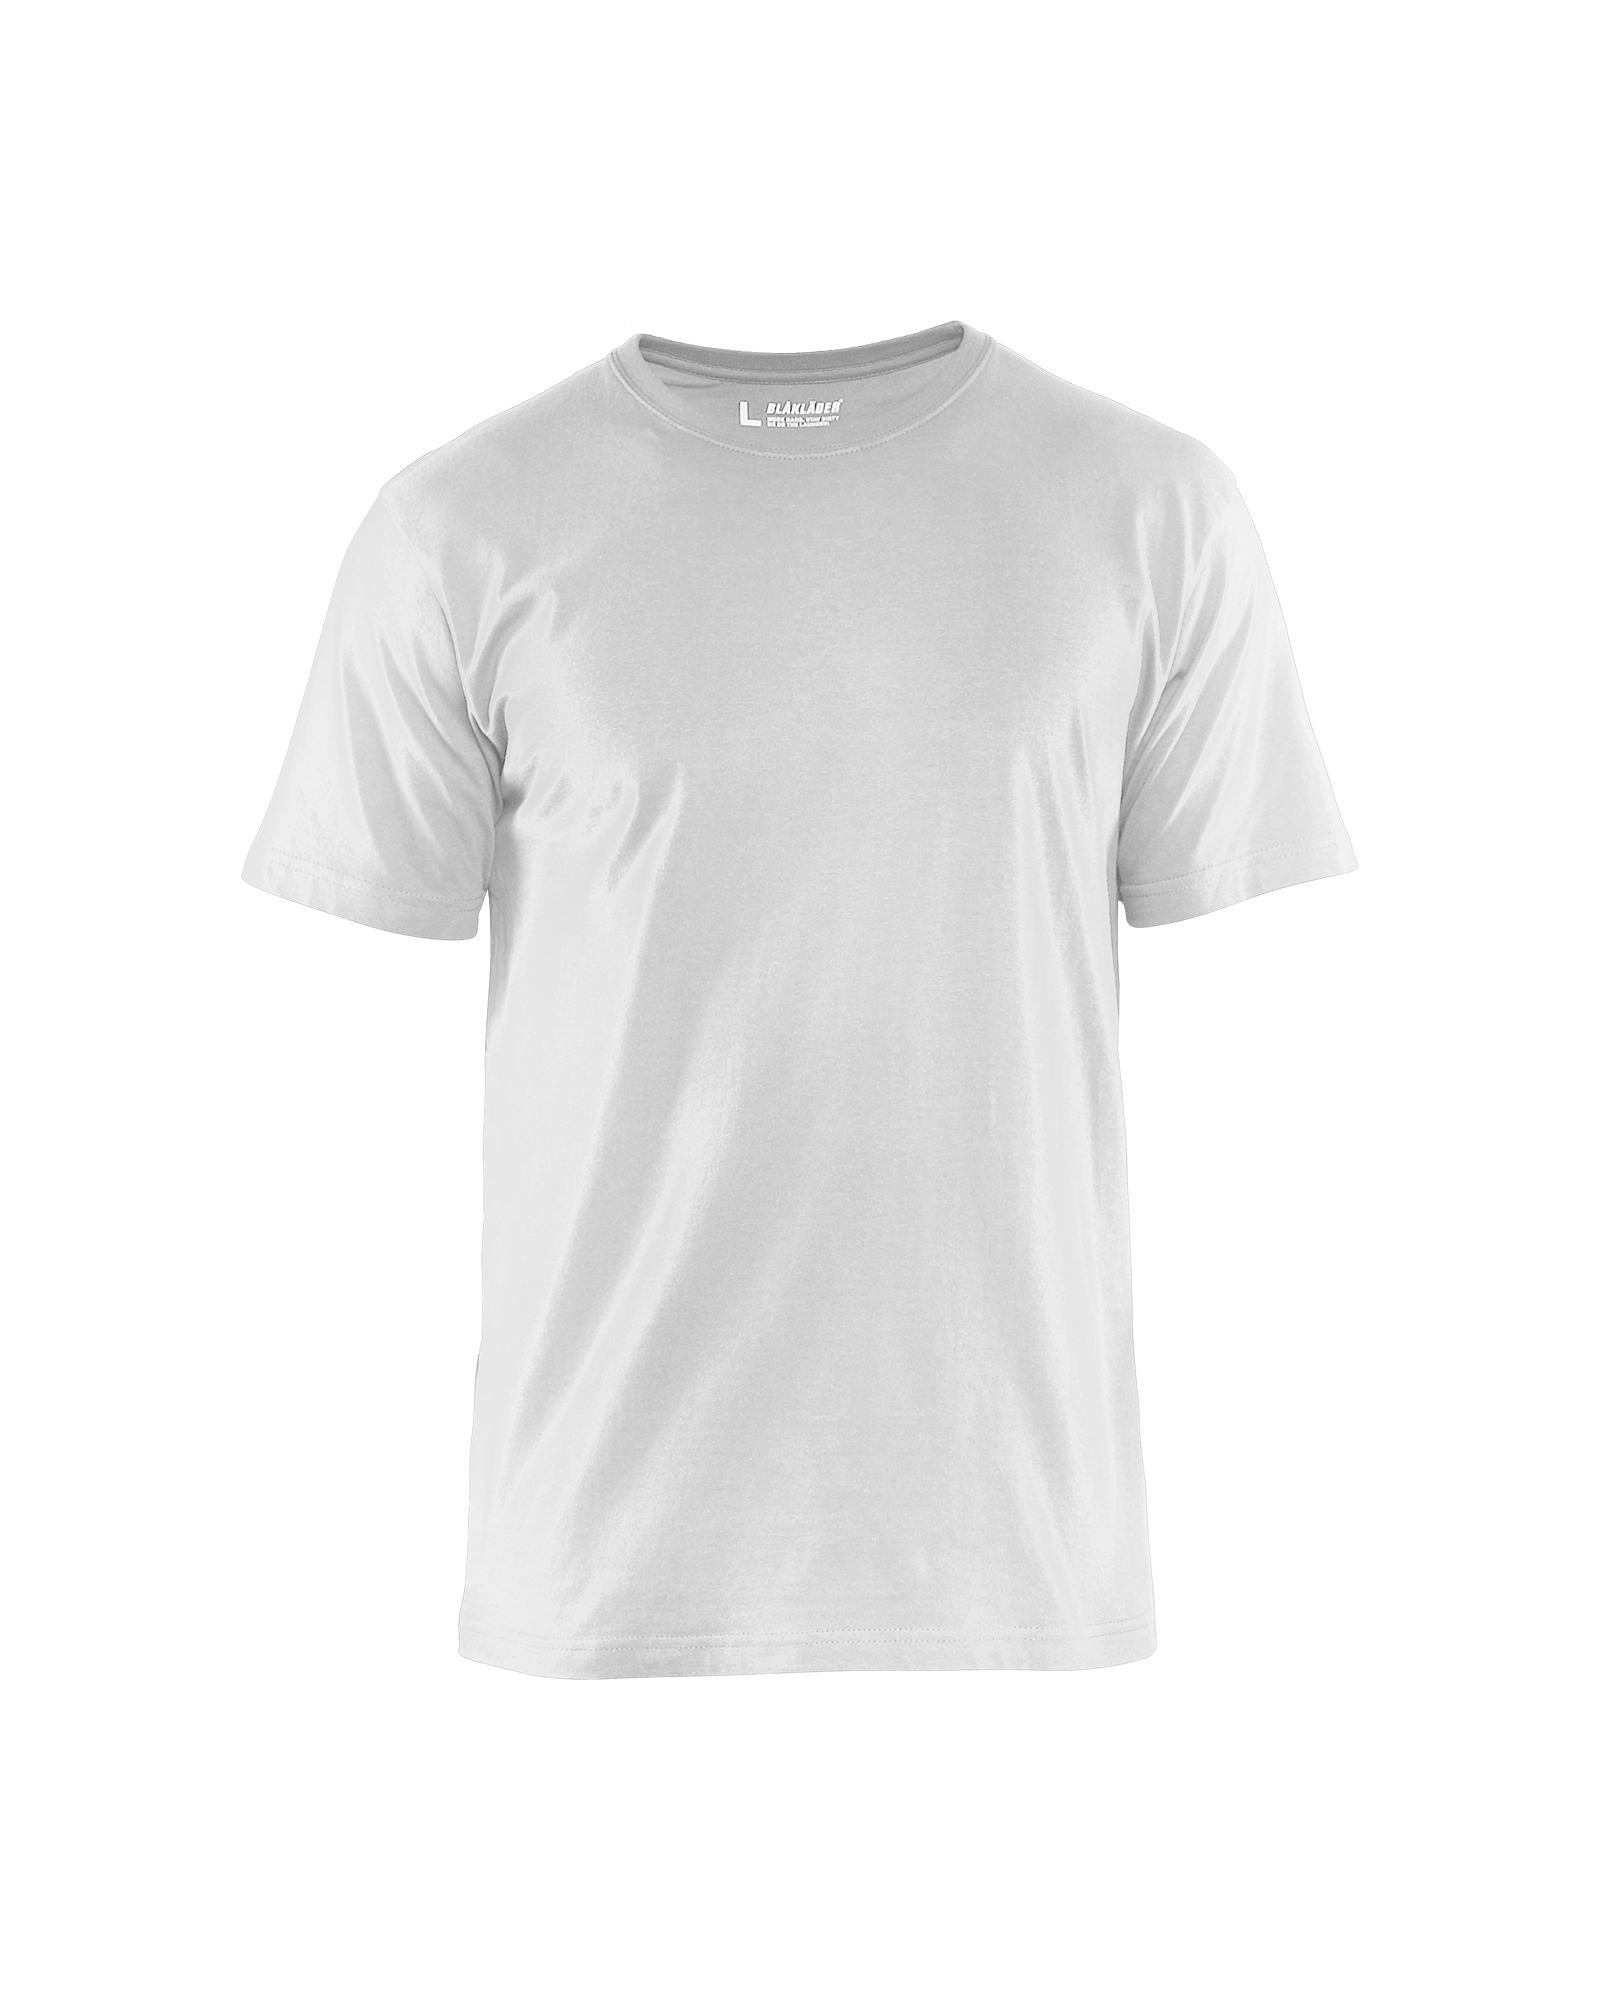 T-shirt pratique Blåkläder 3525 Blanc Blaklader - 352510421000